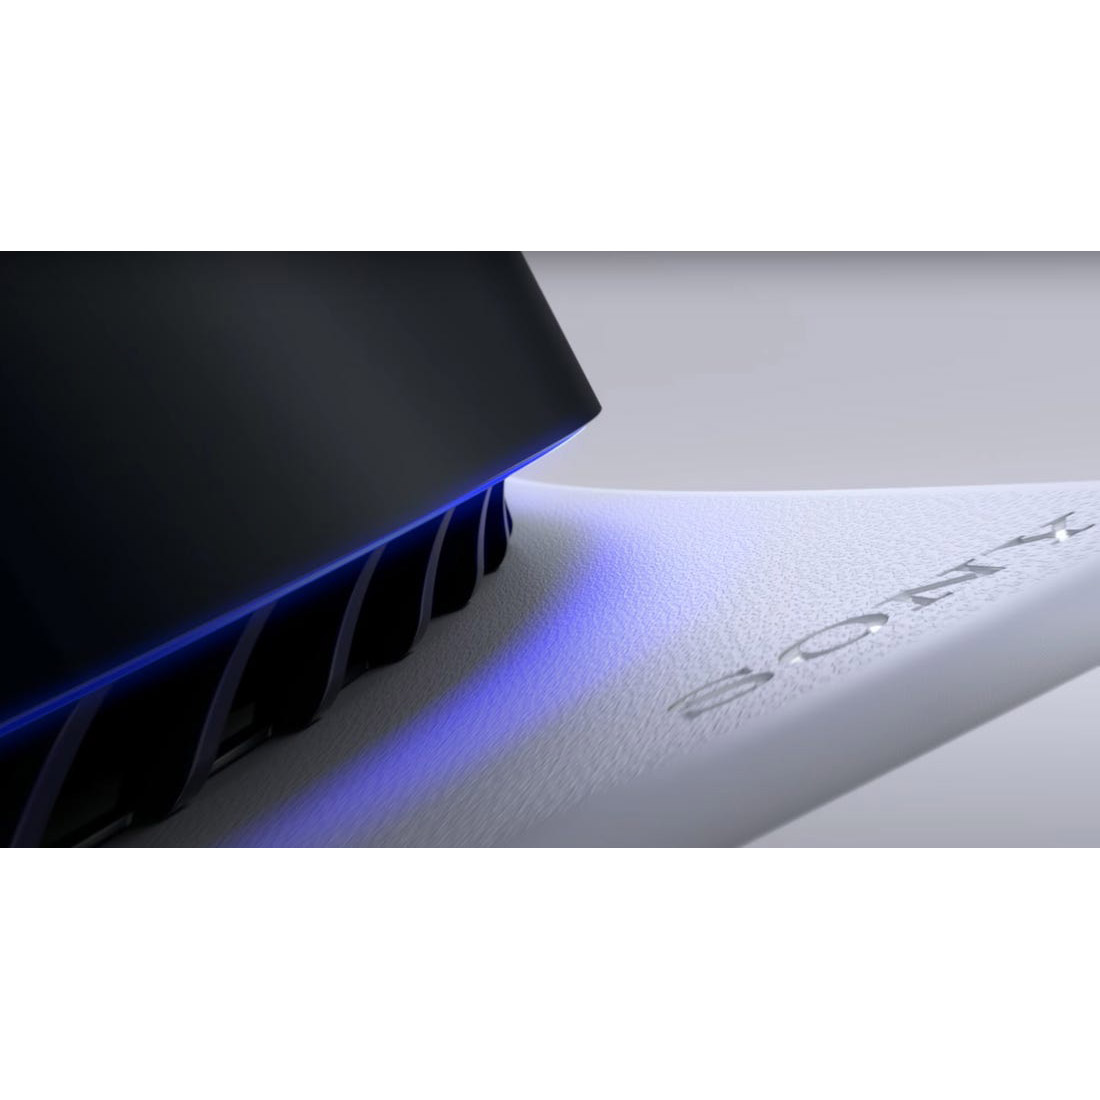 کنسول بازی سونی مدل PlayStation 5 ظرفیت 825 گیگابایت ریجن 1216A اروپا به همراه پایه شارژر